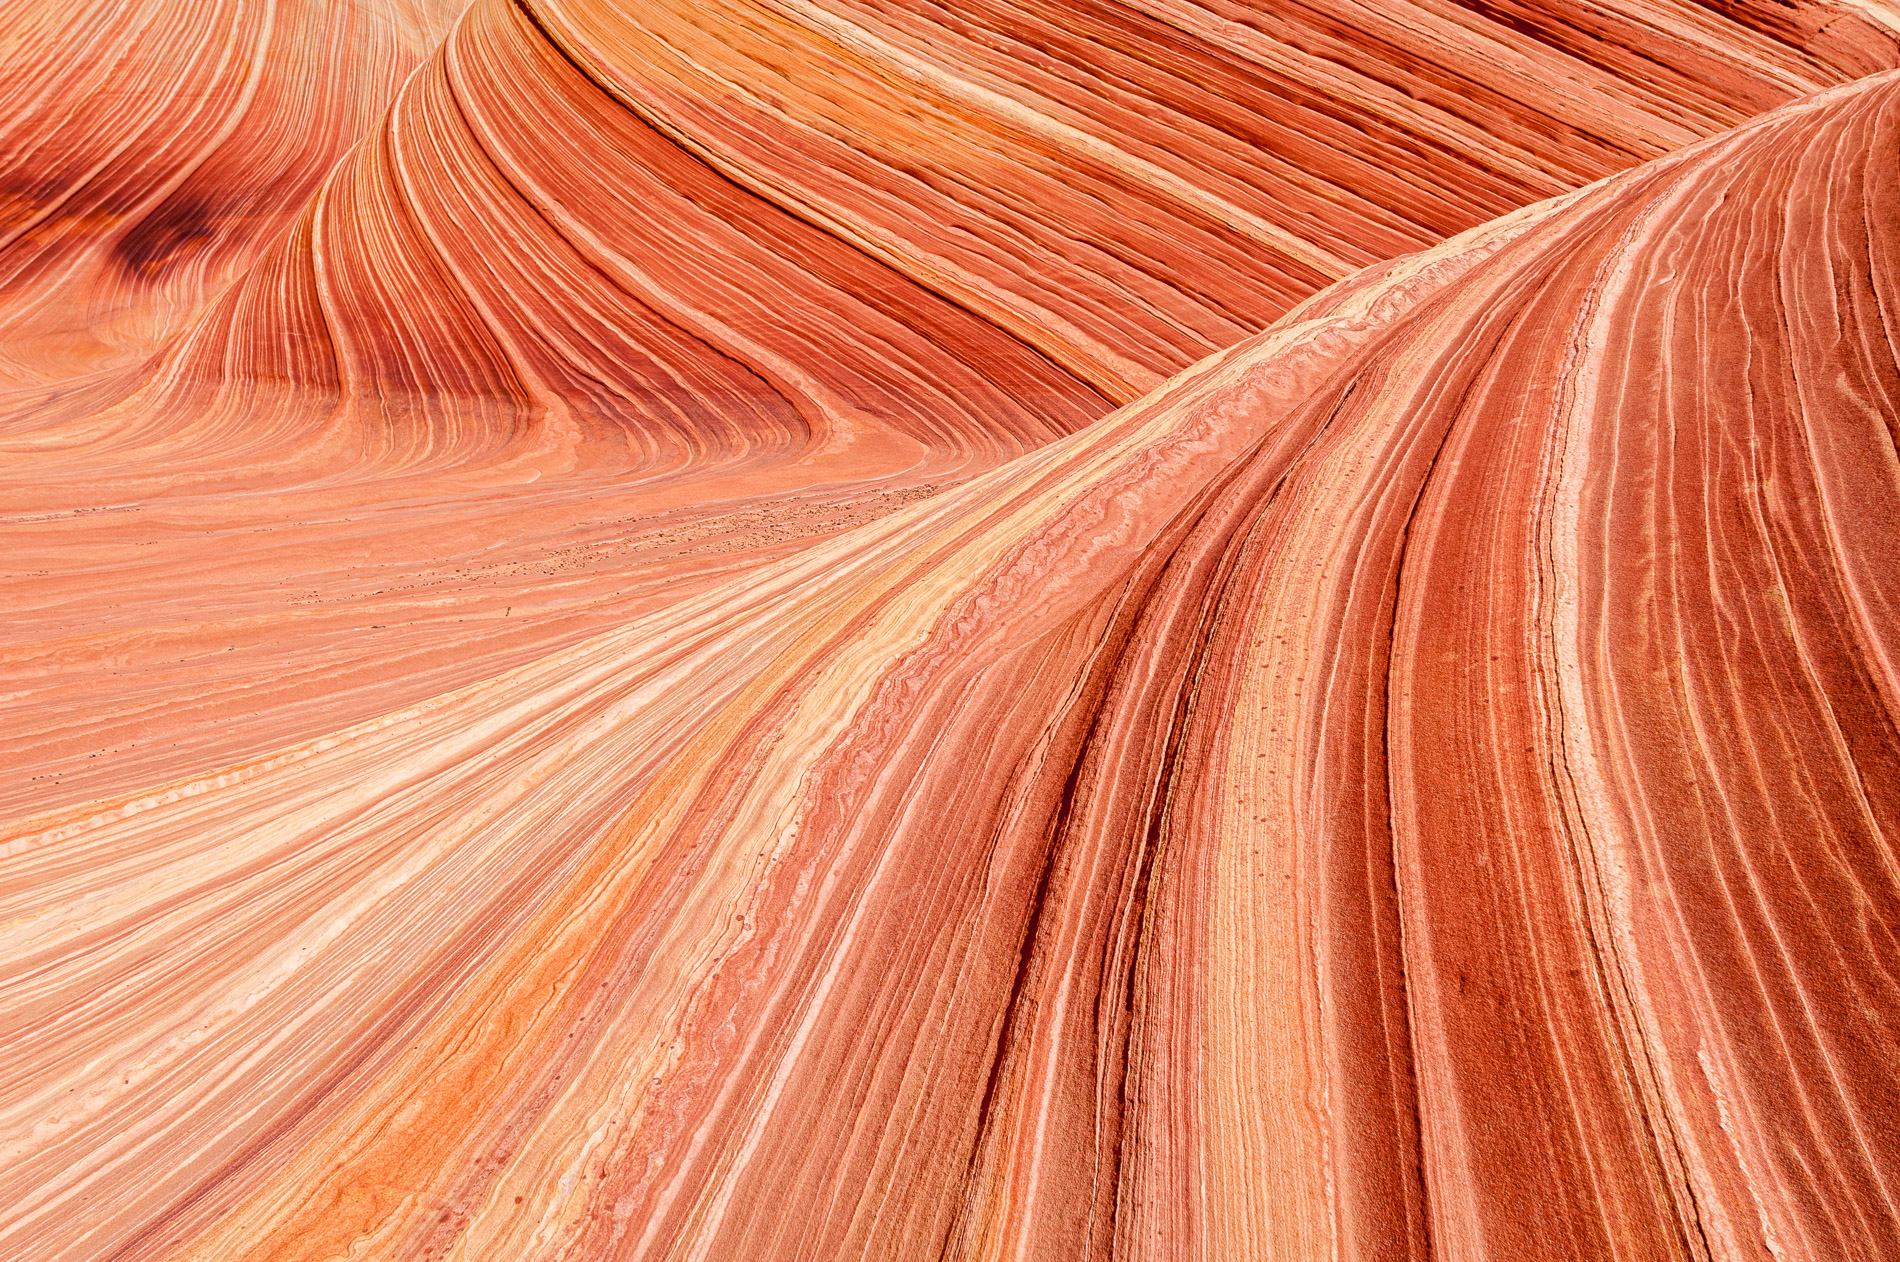 Paysages de Coyote Buttes, The Wave, Vermillion Cliffs National Monument, Arizona. Etats-Unis.